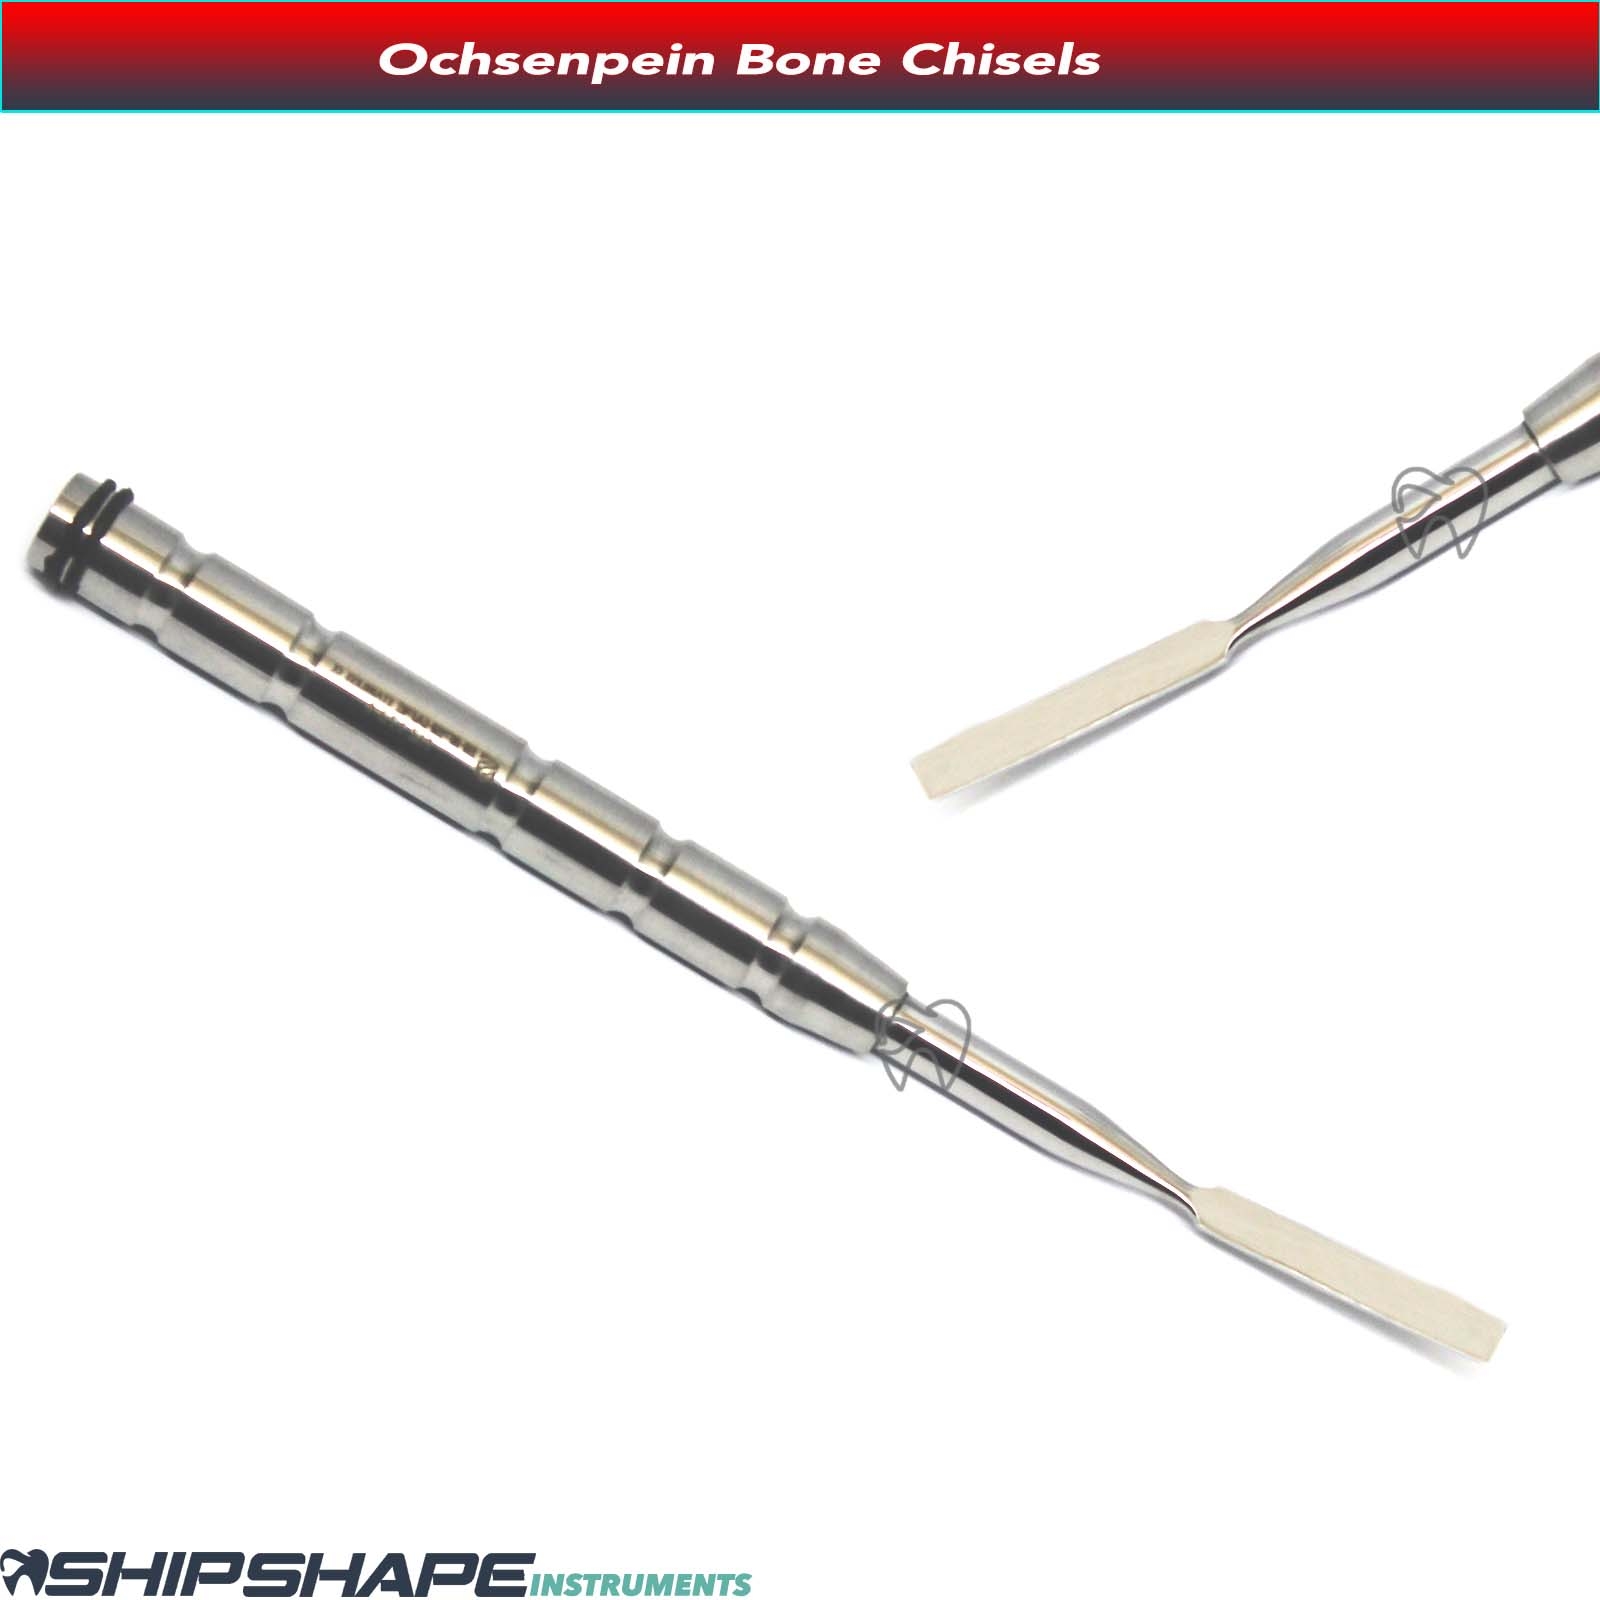 5 Ochsenbein Periodontal Chisels Ochsenbein Cutting Chisel NZ17172OH-1300